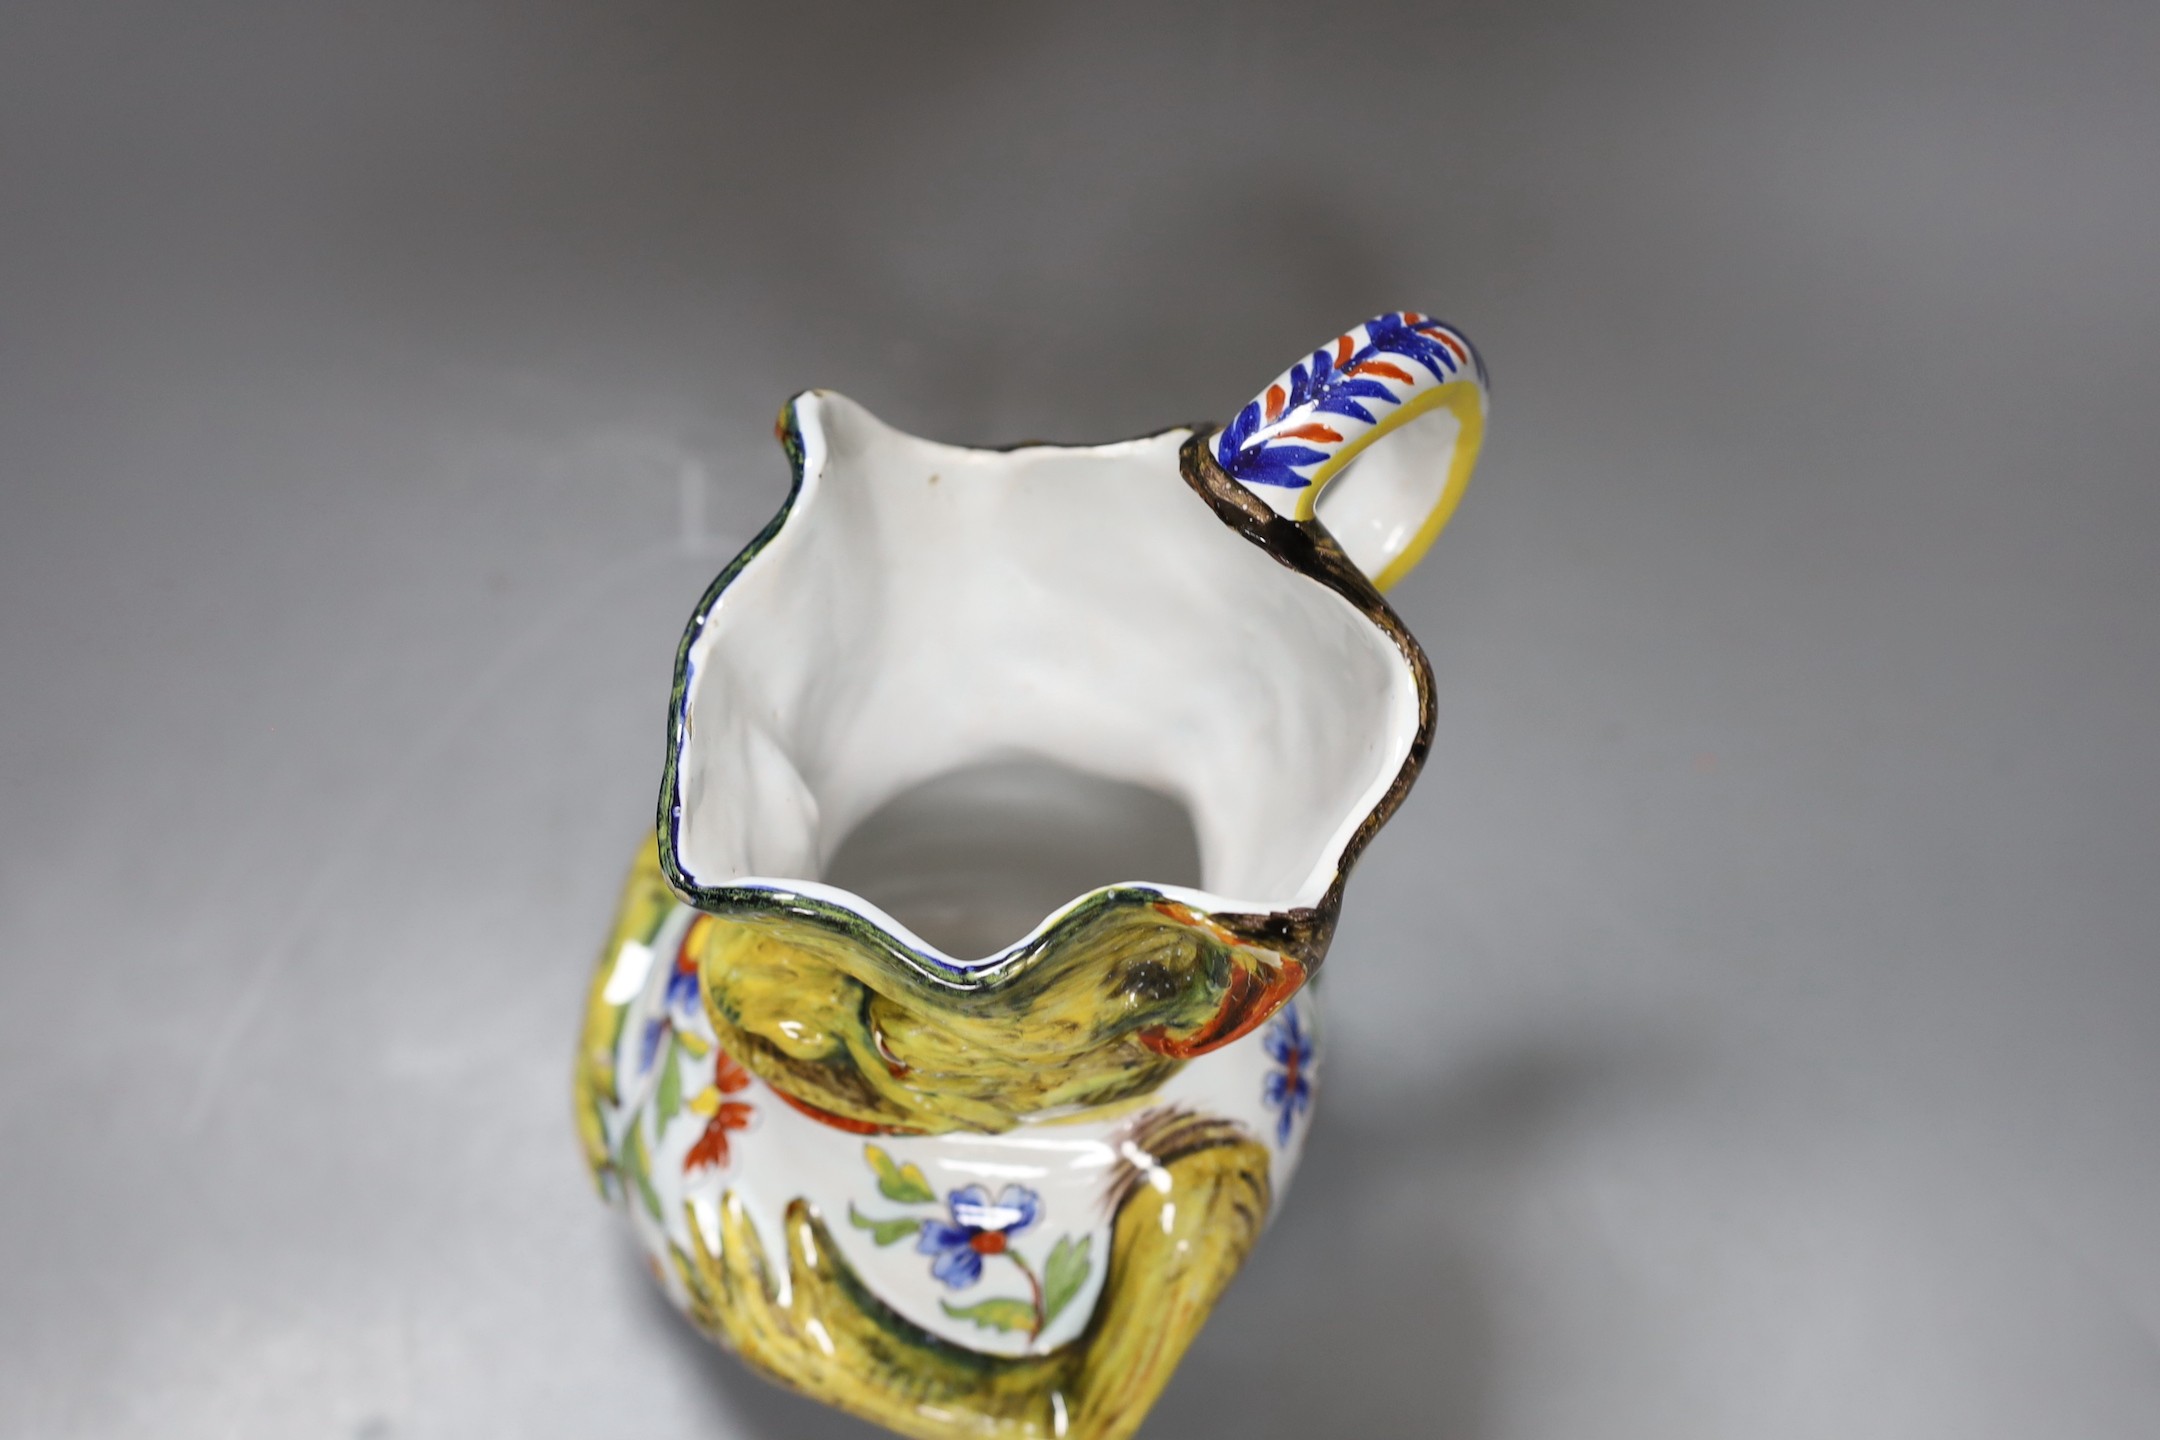 A Rouen faience grotesque jug, 19.5 high